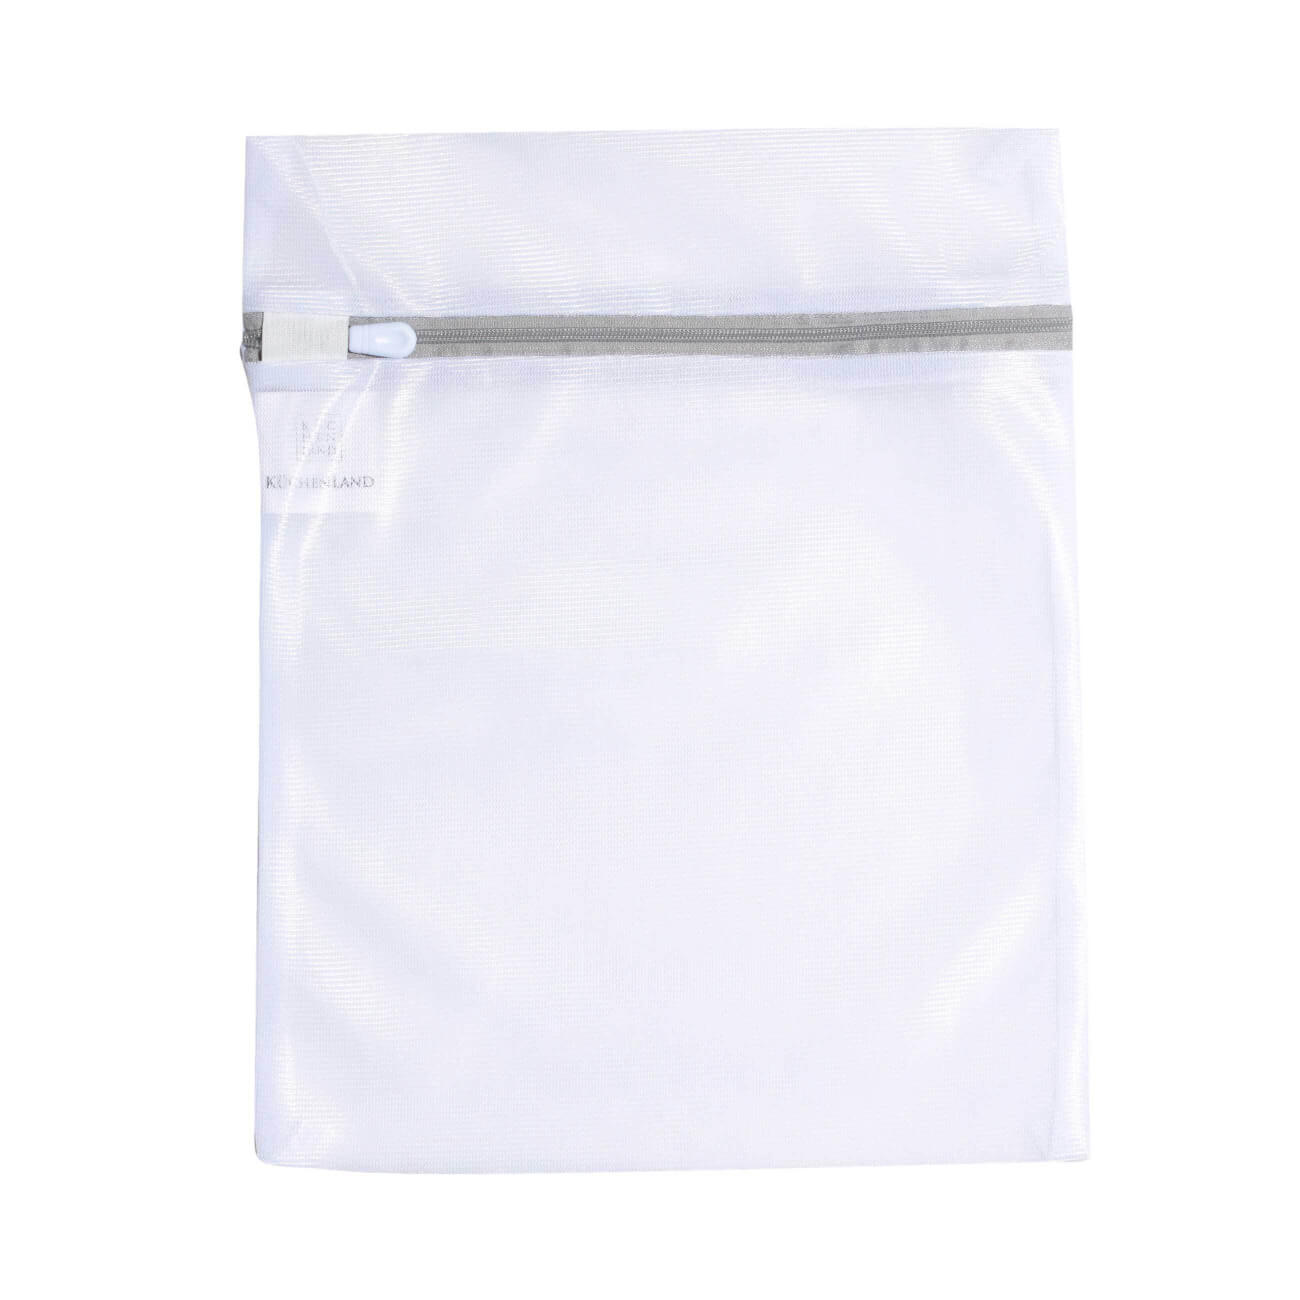 Мешок для стирки нижнего белья, 25х30 см, полиэстер, бело-серый, Safety plus мешок для стирки носков и колготок 22х33 см полиэстер бело серый safety plus